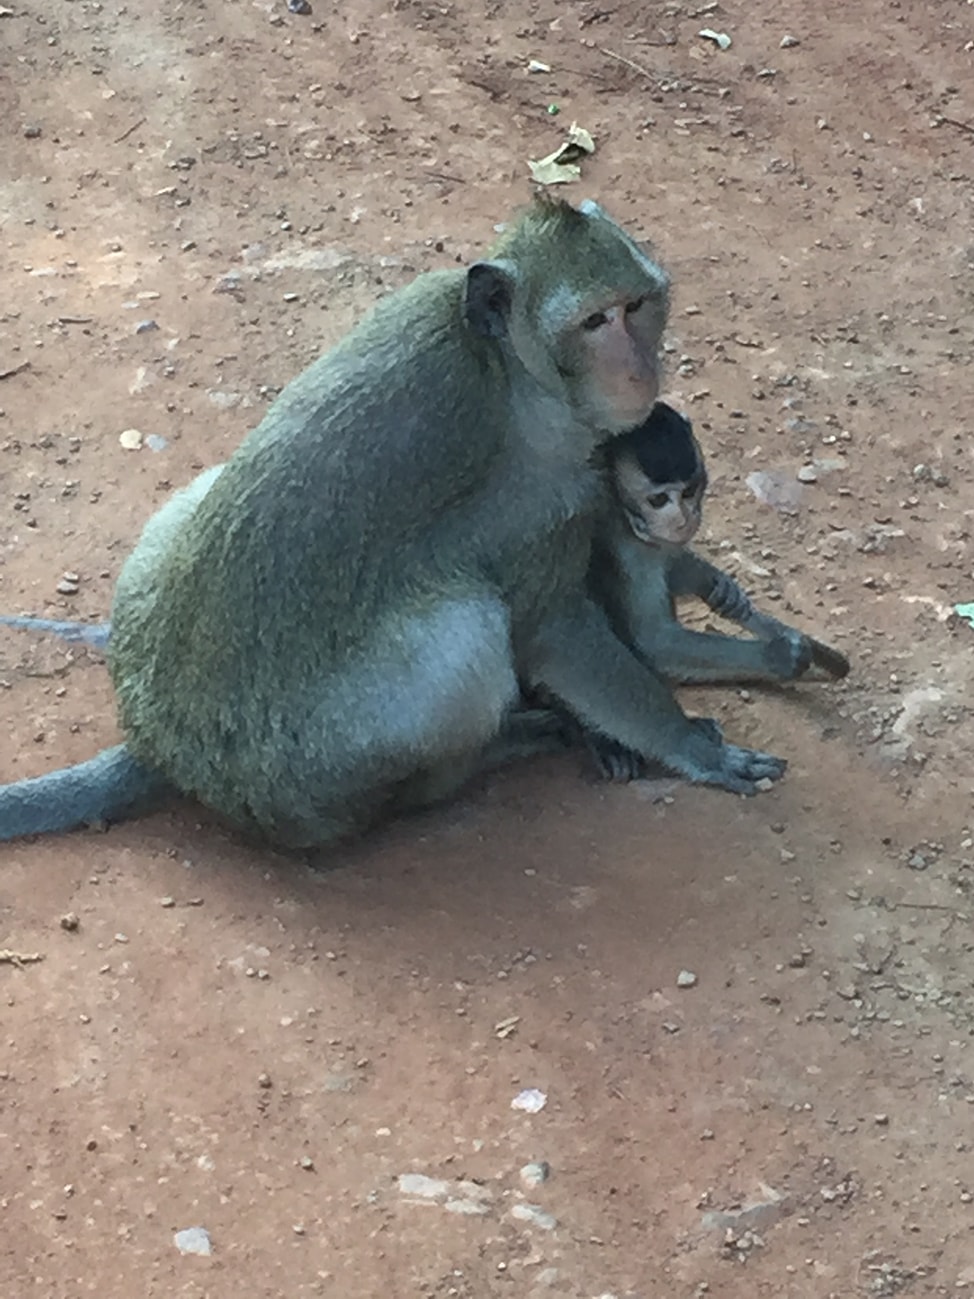 Image of mama and baby macaque at Angkor Wat